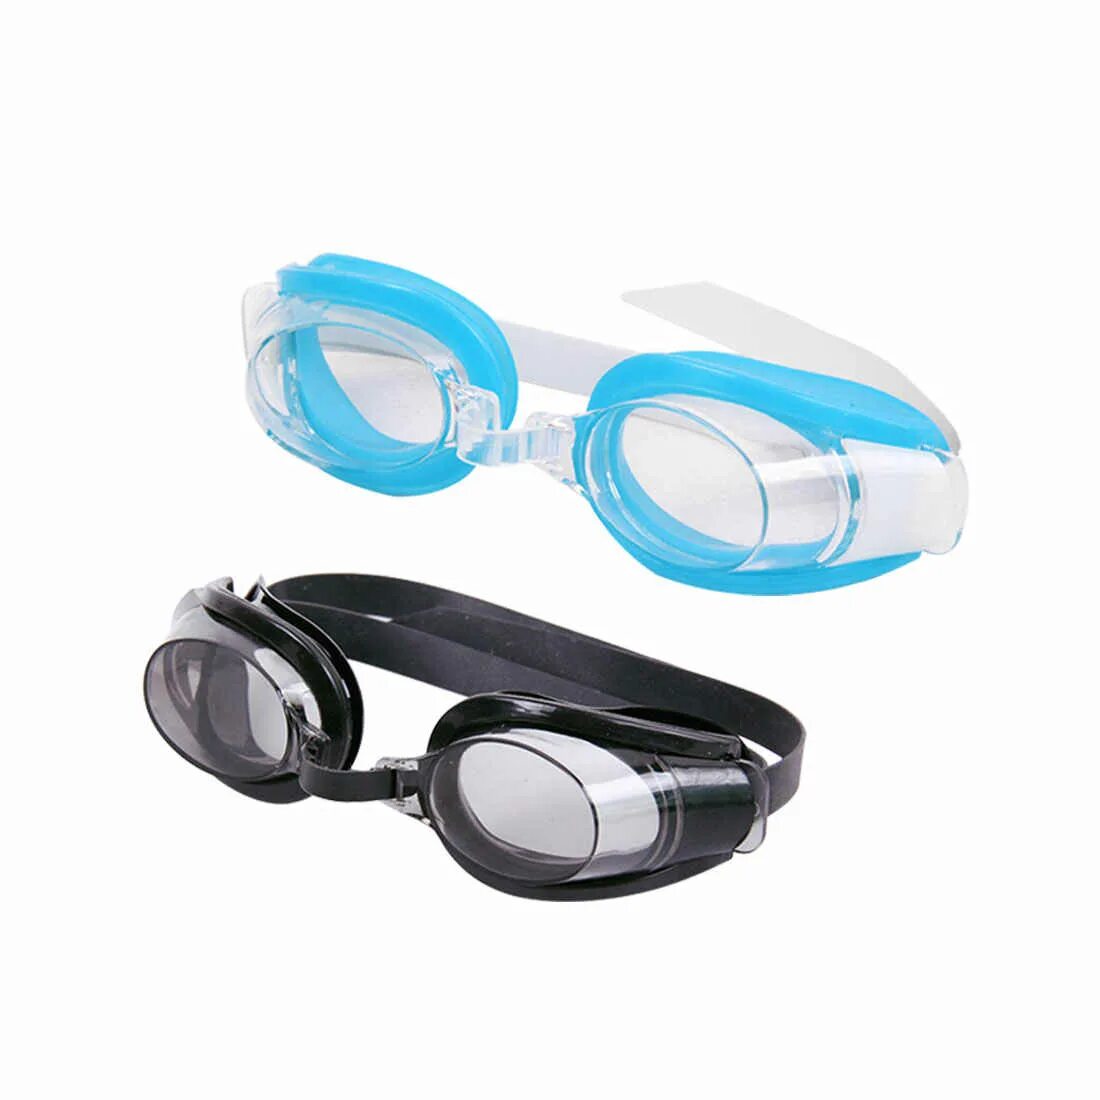 Очки для бассейна хорошие. Очки для бассейна. Очки с берушами защитные. Плавательные очки с воздухом. Очки защита для бассейна.